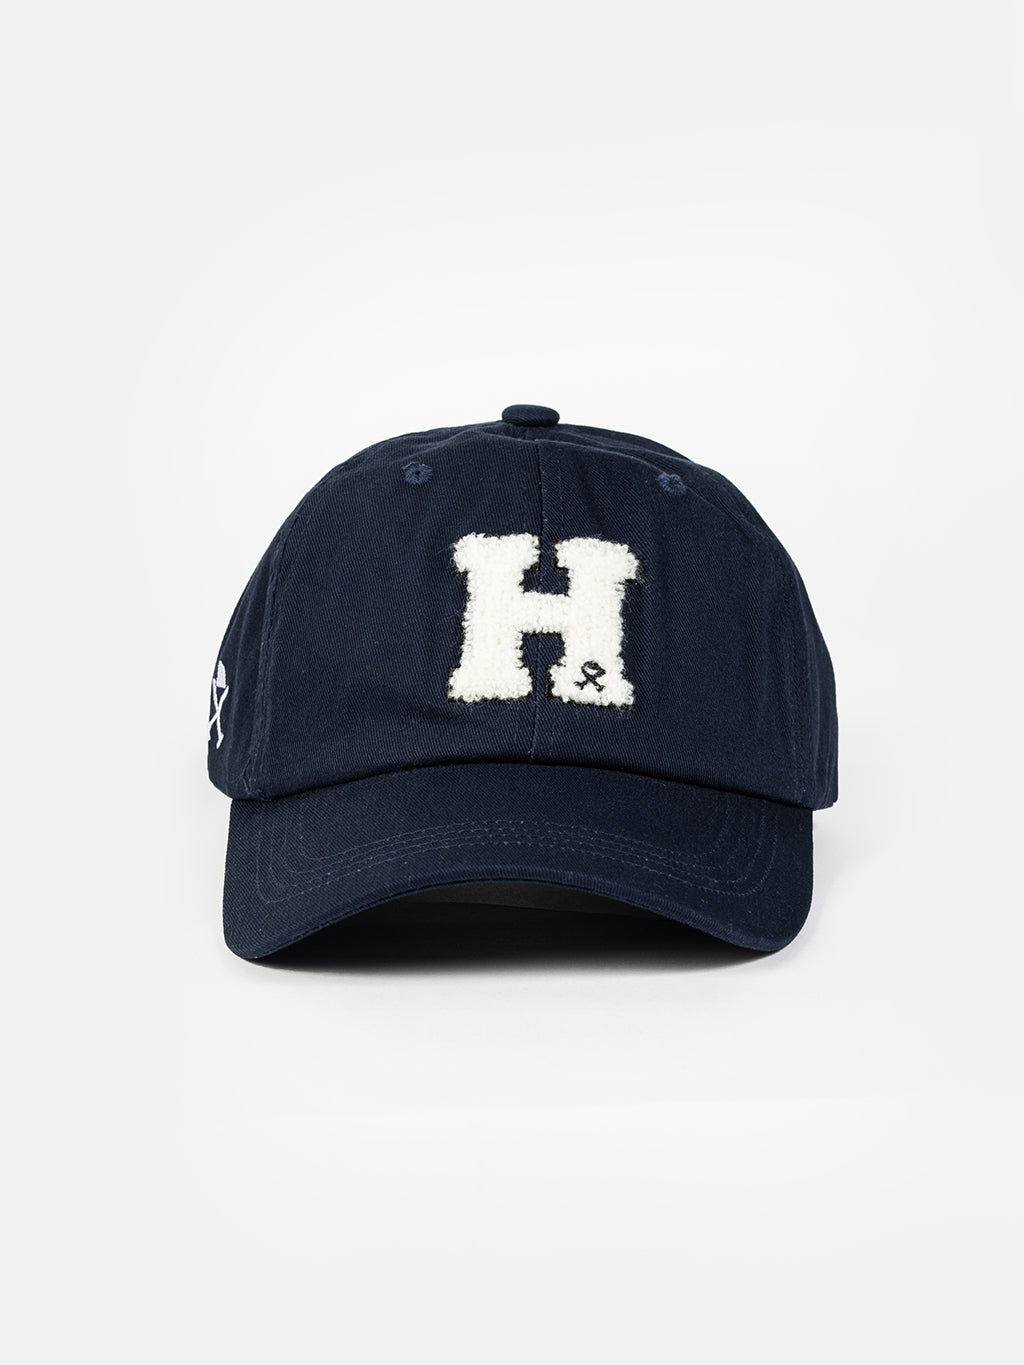 H cap